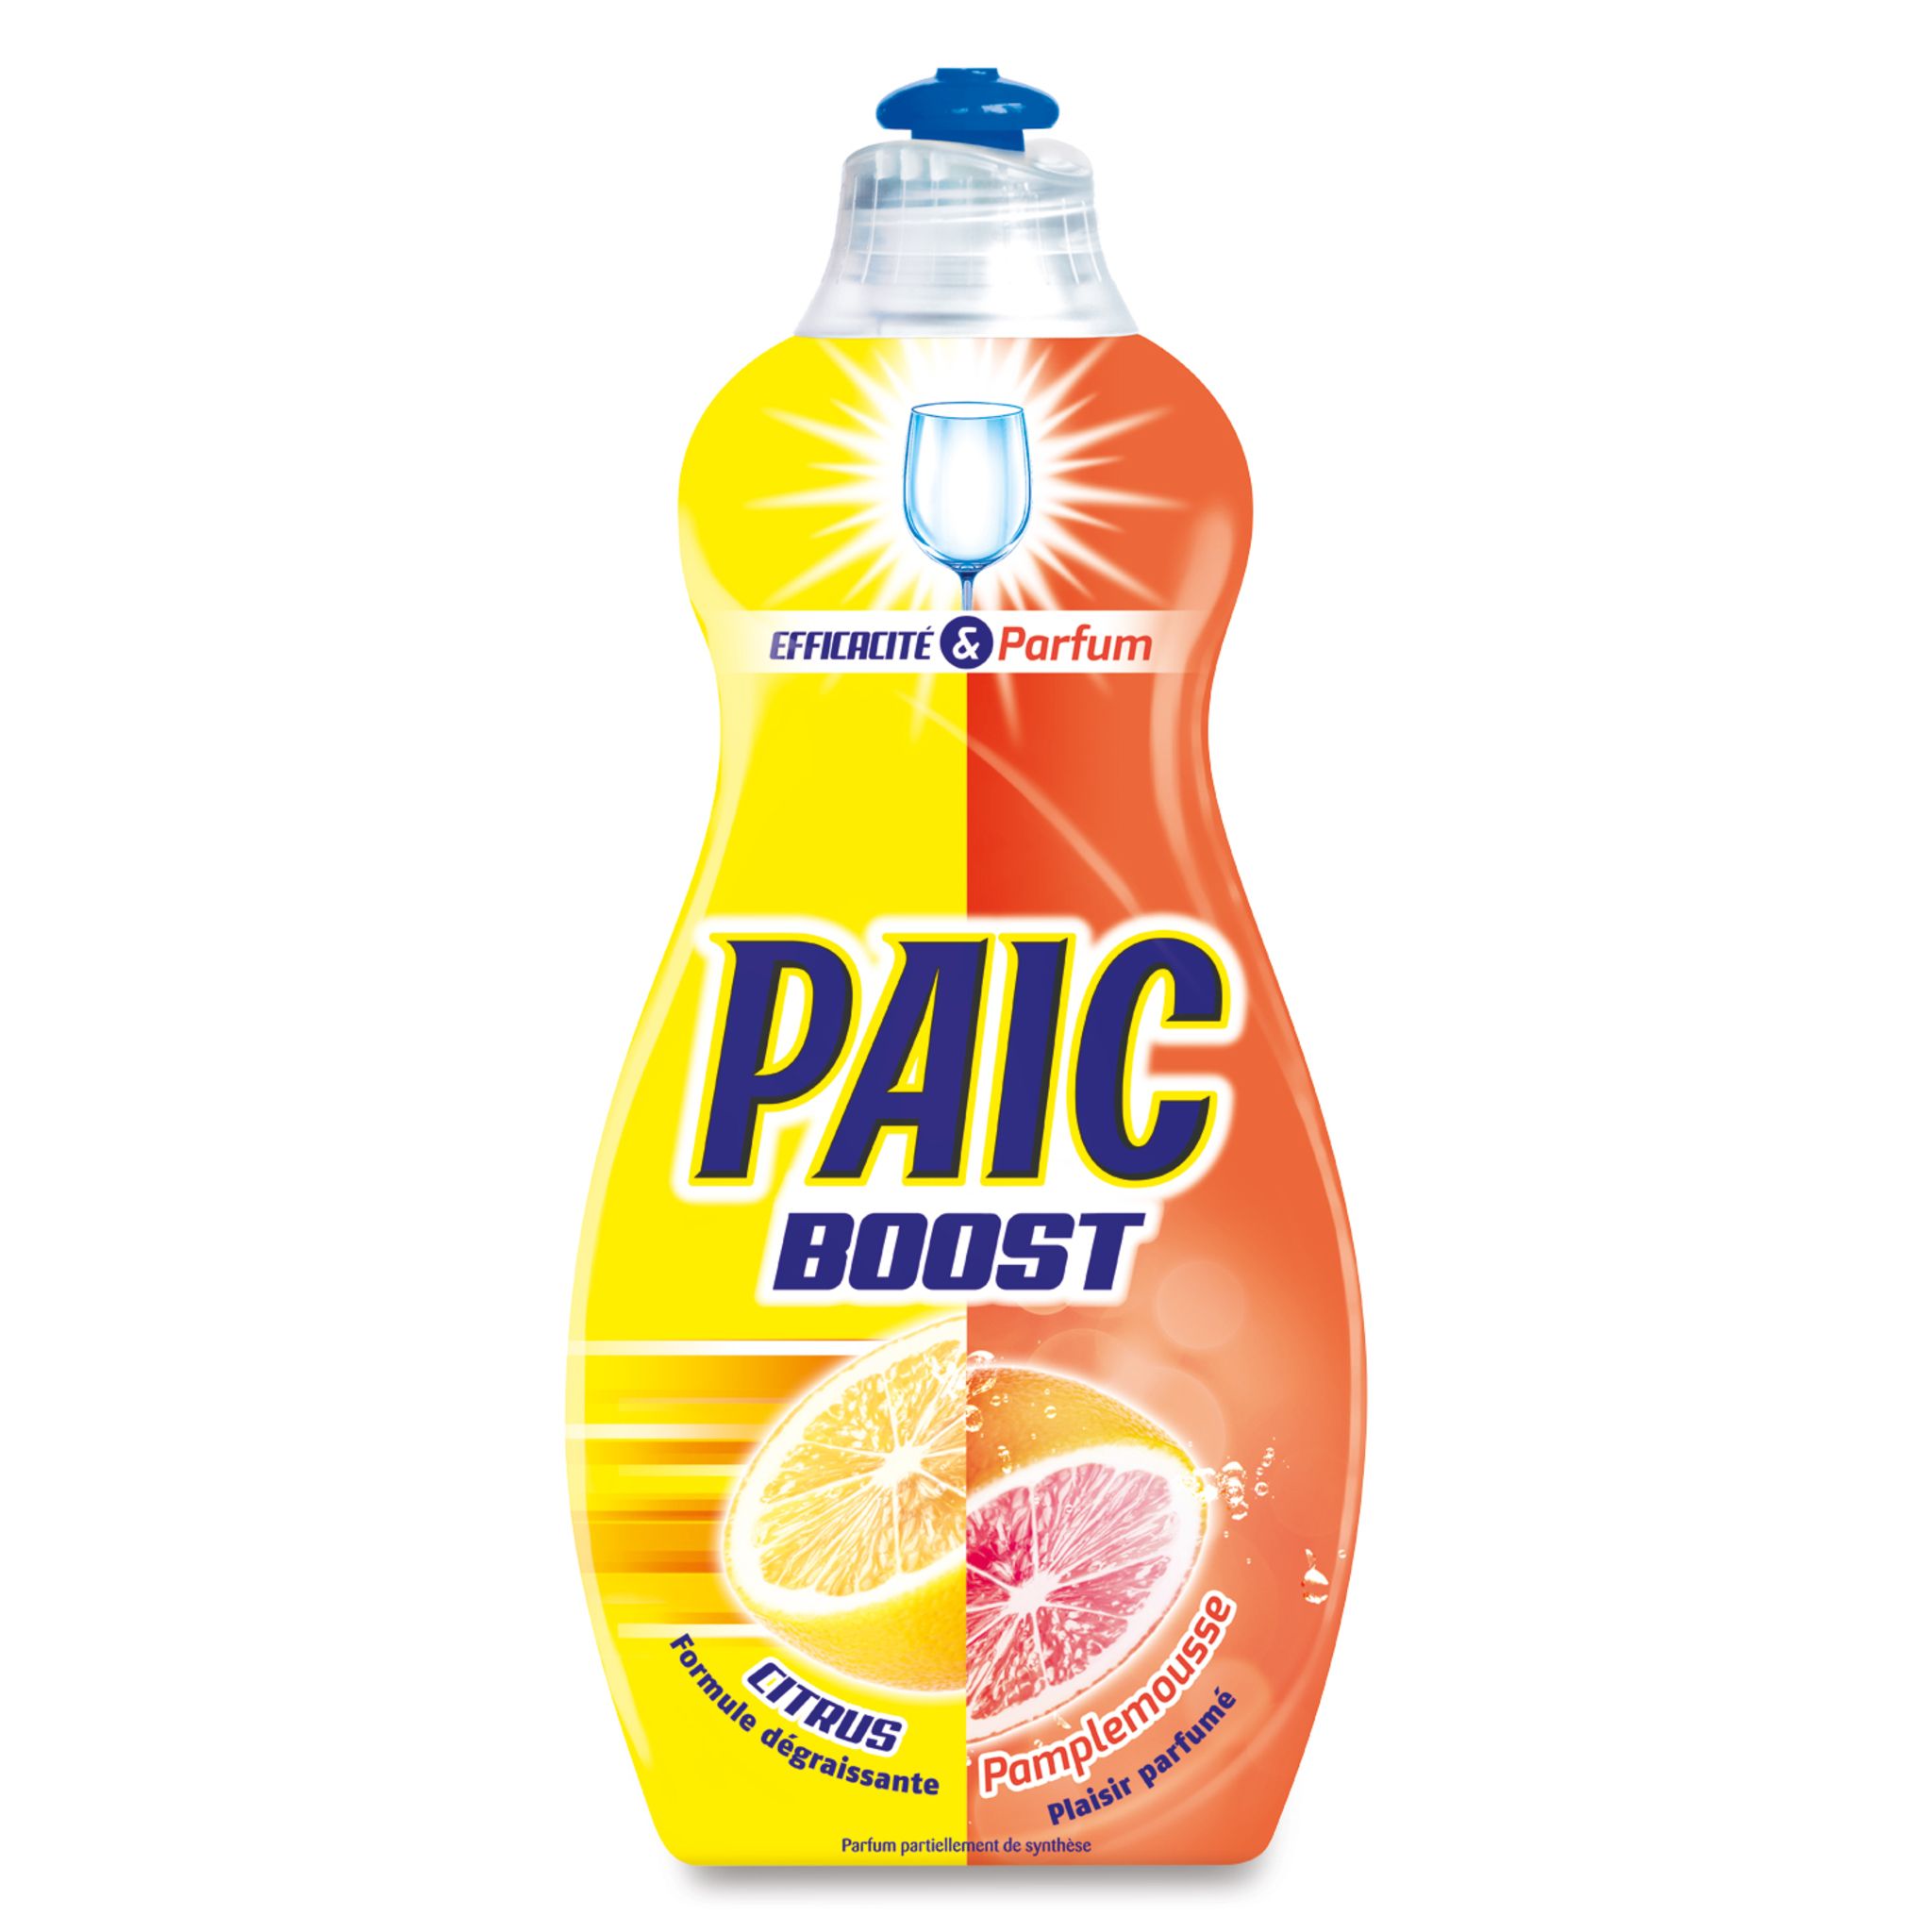 PAIC Paic boost liquide vaisselle citron pamplemousse 500ml pas cher 